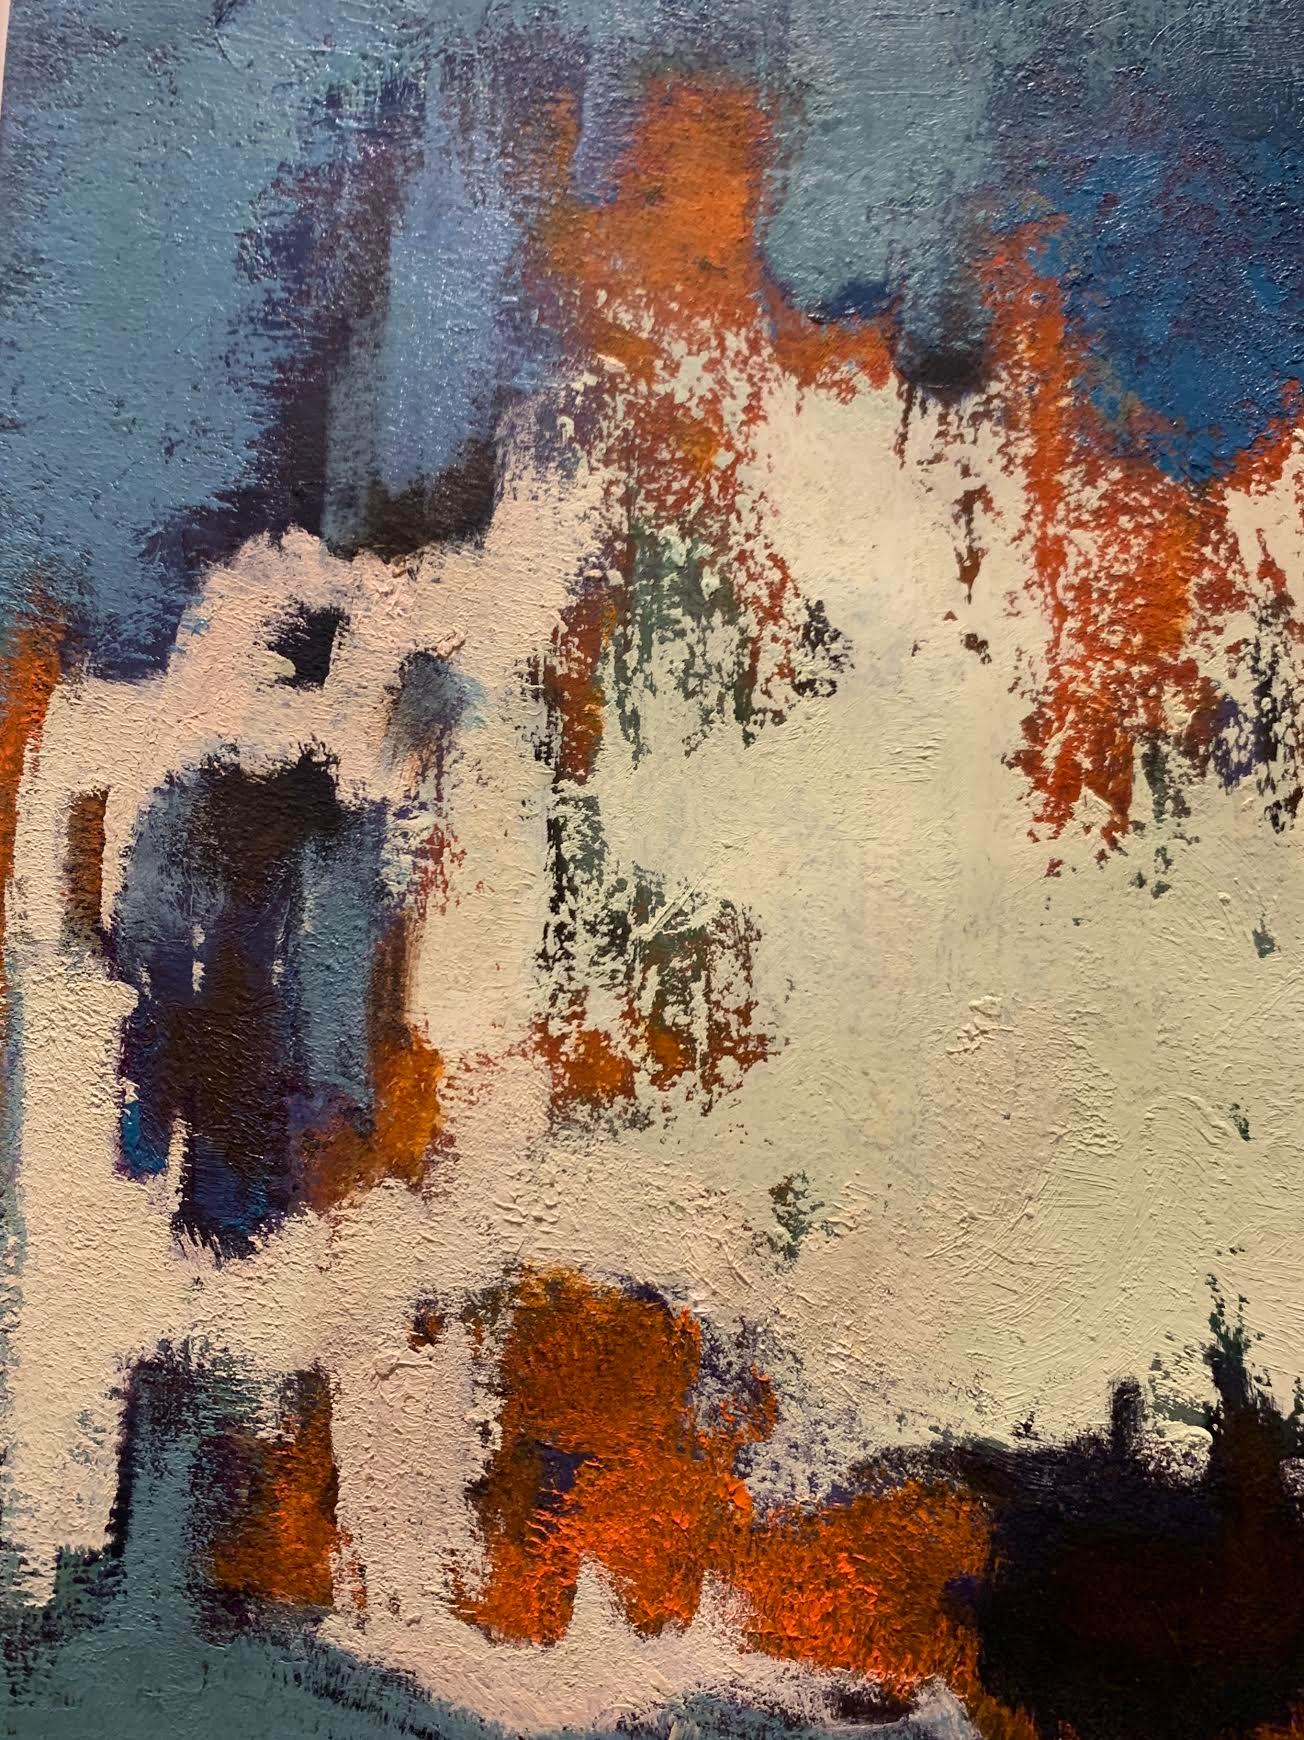 1950er Jahre Deutsch Acryl abstrakte Malerei in natürlicher Farbe Holzrahmen.
Die vorherrschende Farbe ist Creme, umgeben von Blau, Orange und Schwarz.
Der Künstler ist unbekannt.
Das Gemälde ist ohne Glas gerahmt.